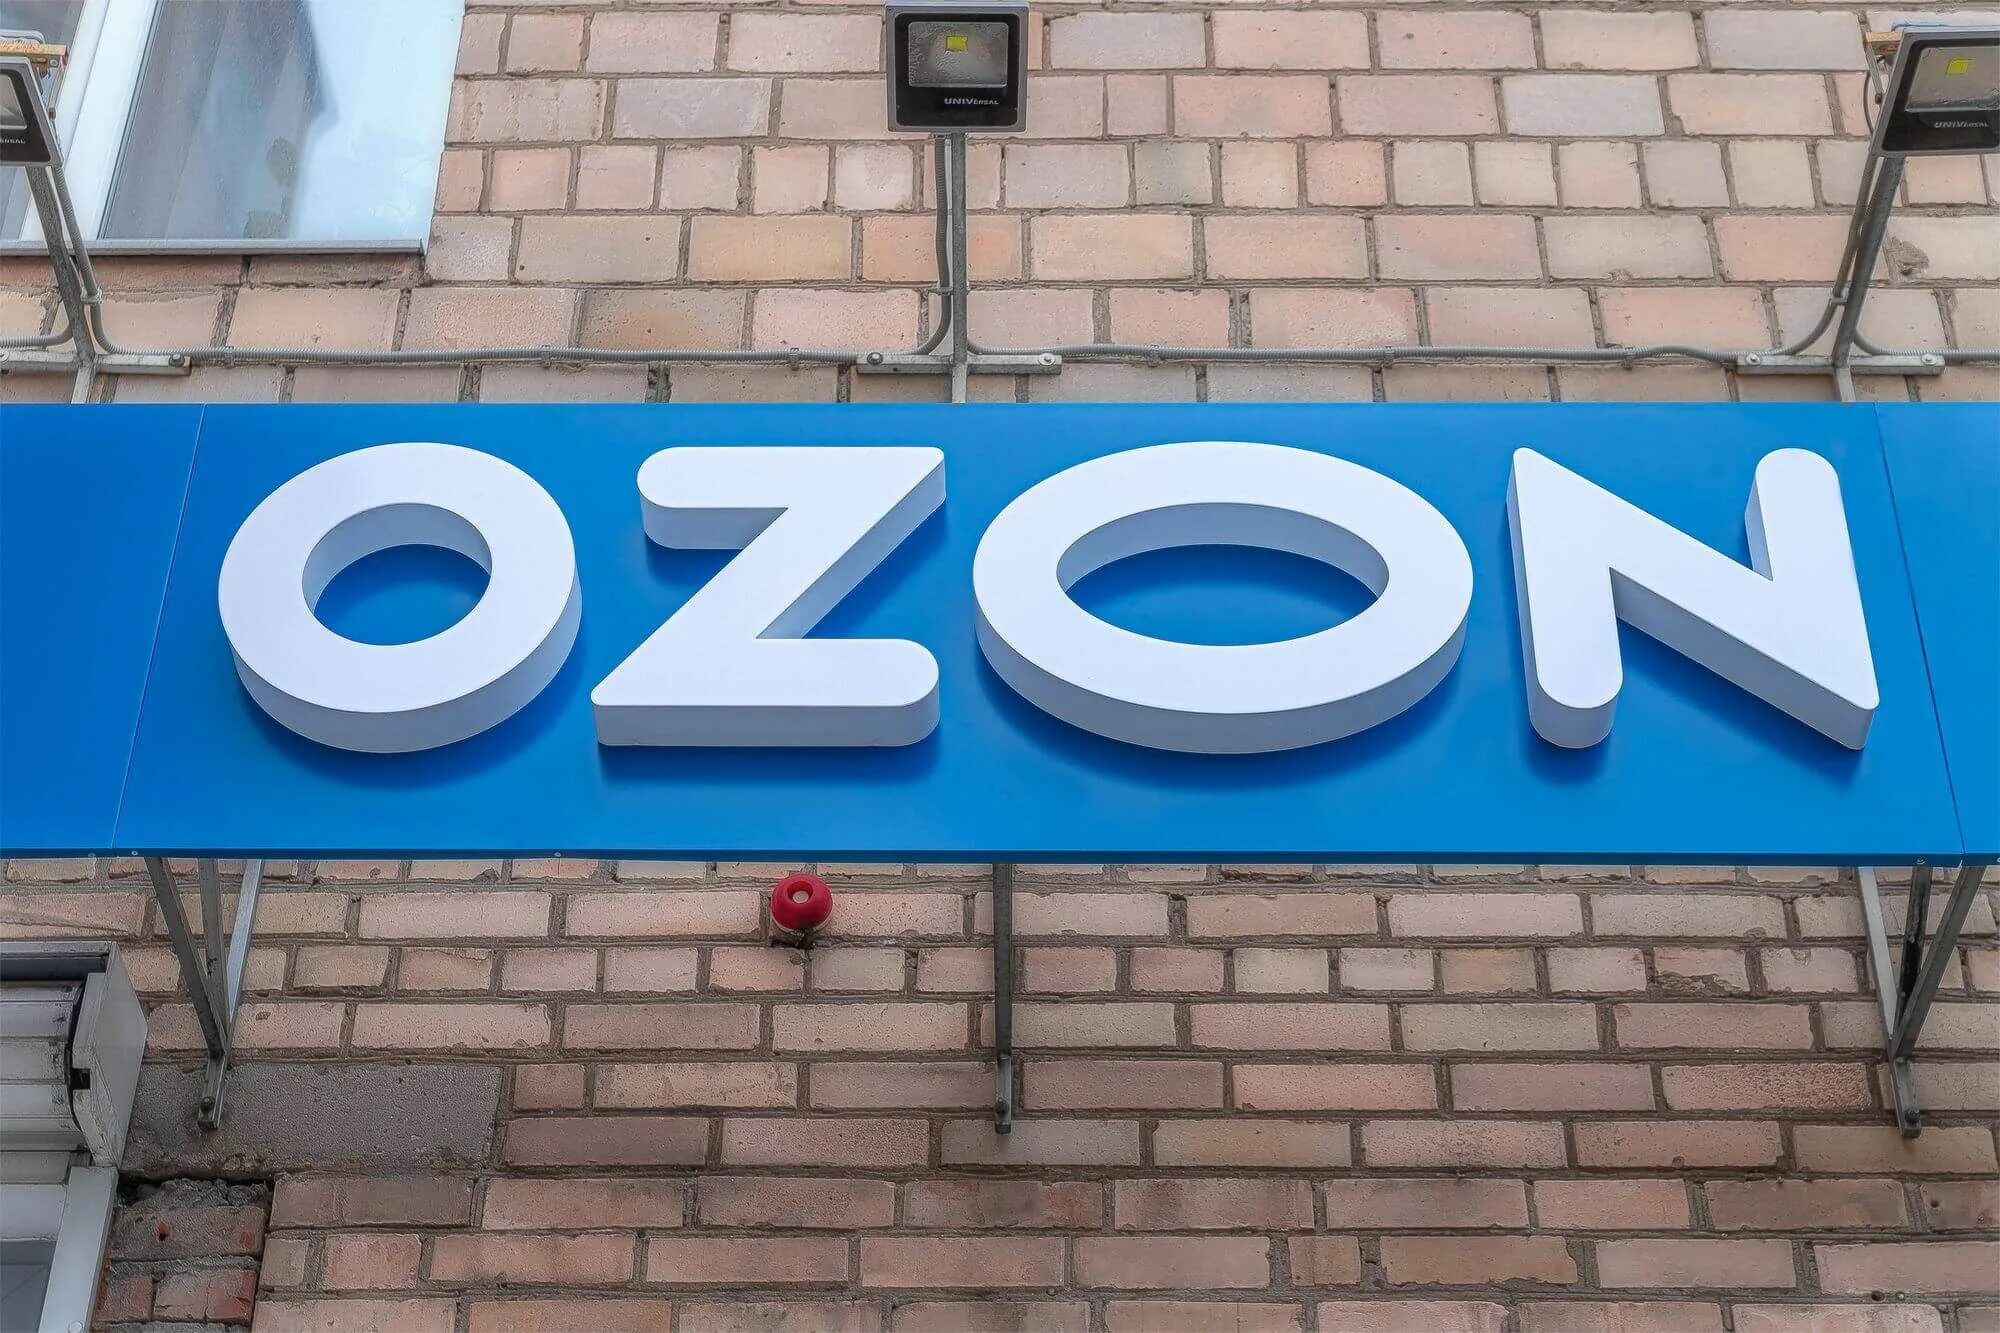 Озон тракторная. Вывеска Озон. Световая вывеска Озон. Вывеска Озон на фасаде. Объемные буквы на здании.